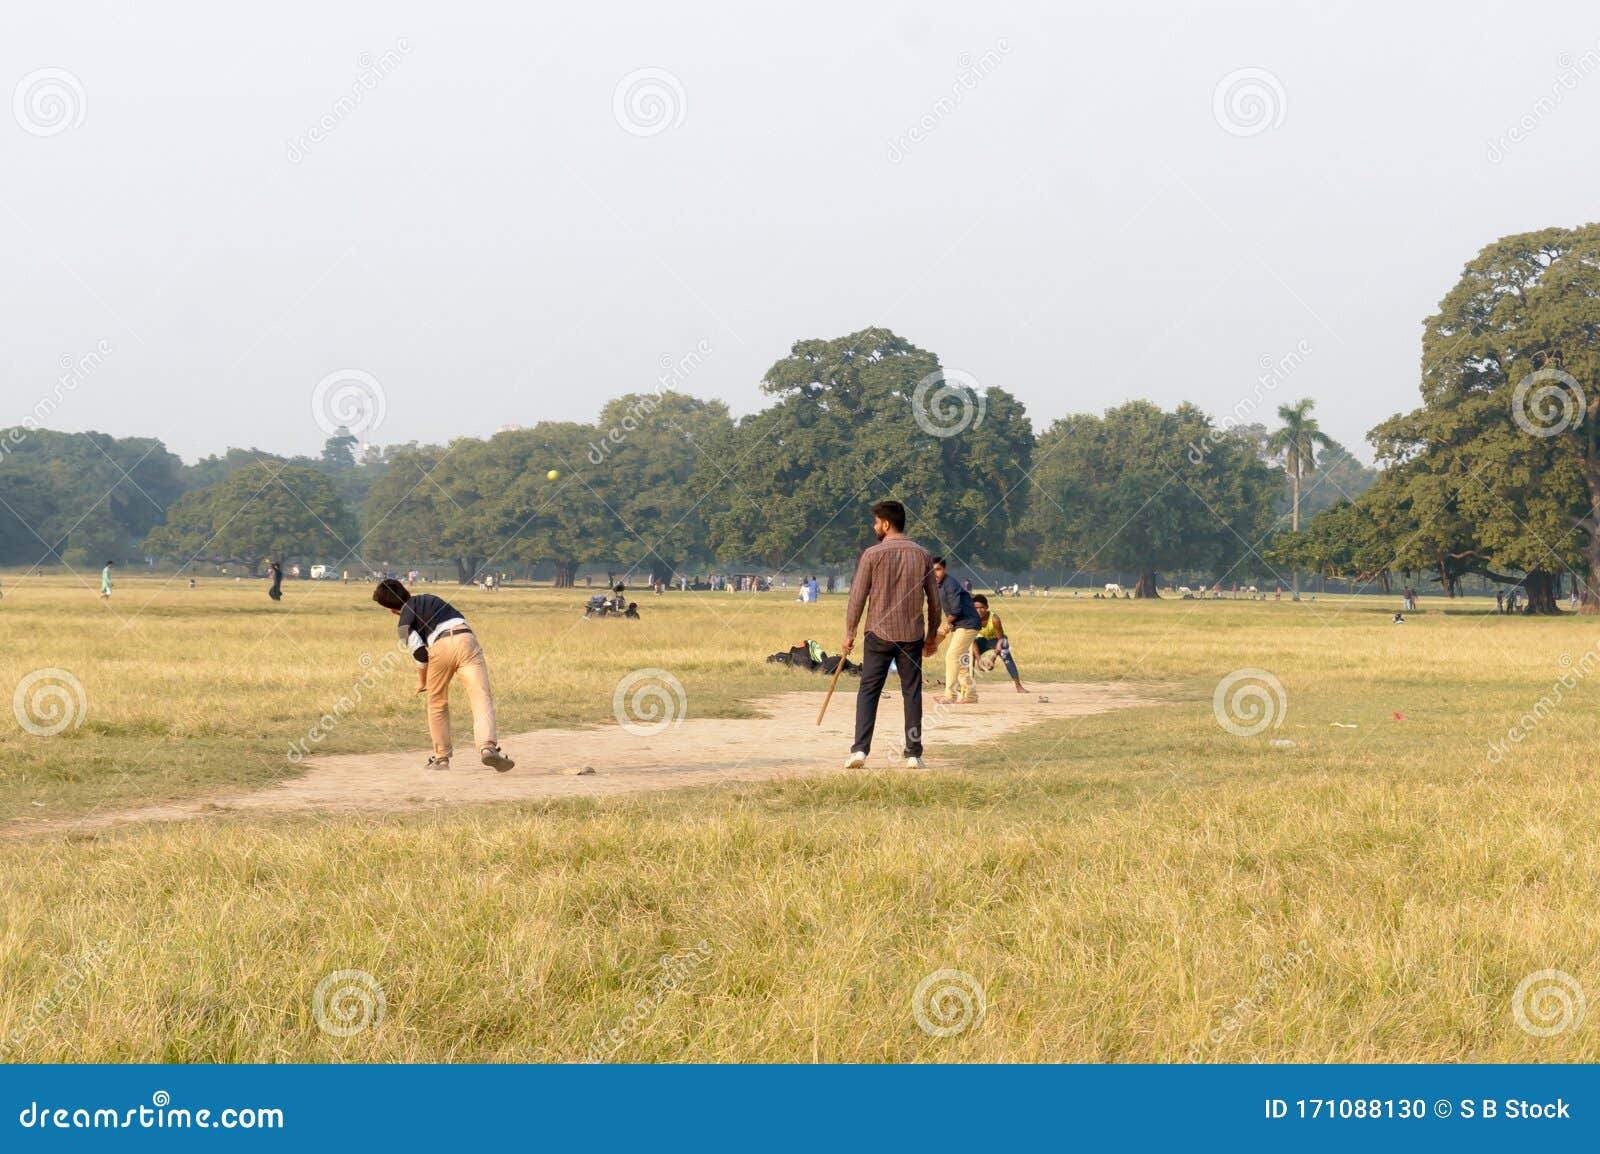 Local Indian Boys Having Fun Playing Cricket Game In Maidan Area